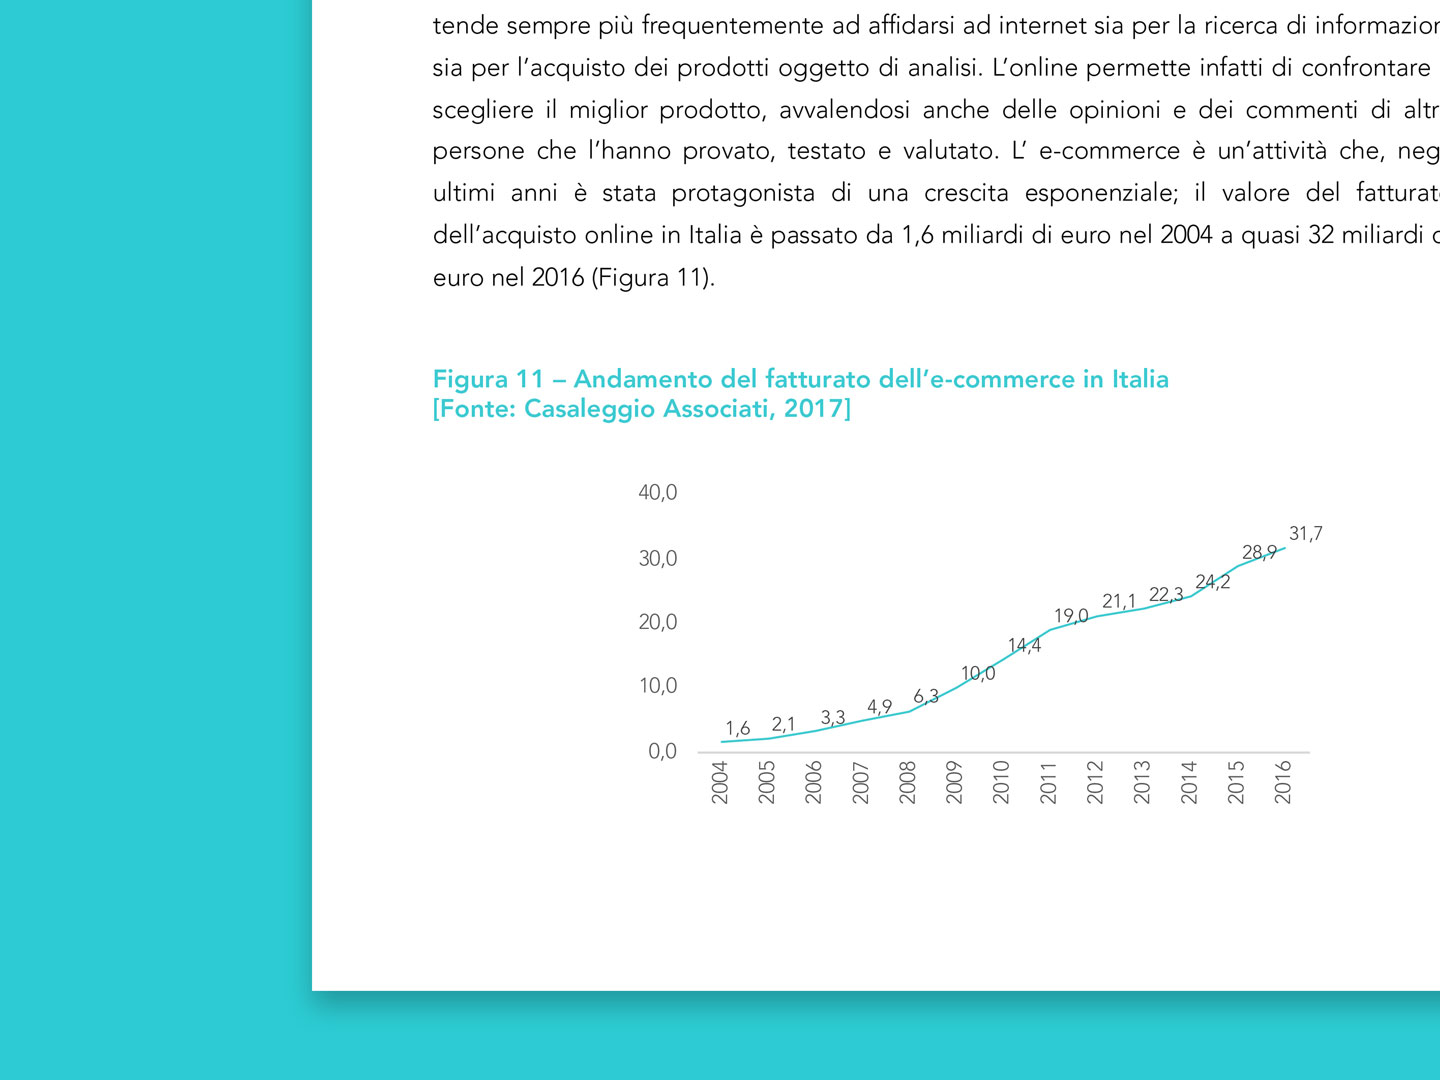 Strategia di vendita - Andamento del fatturato dell'e-commerce in Italia